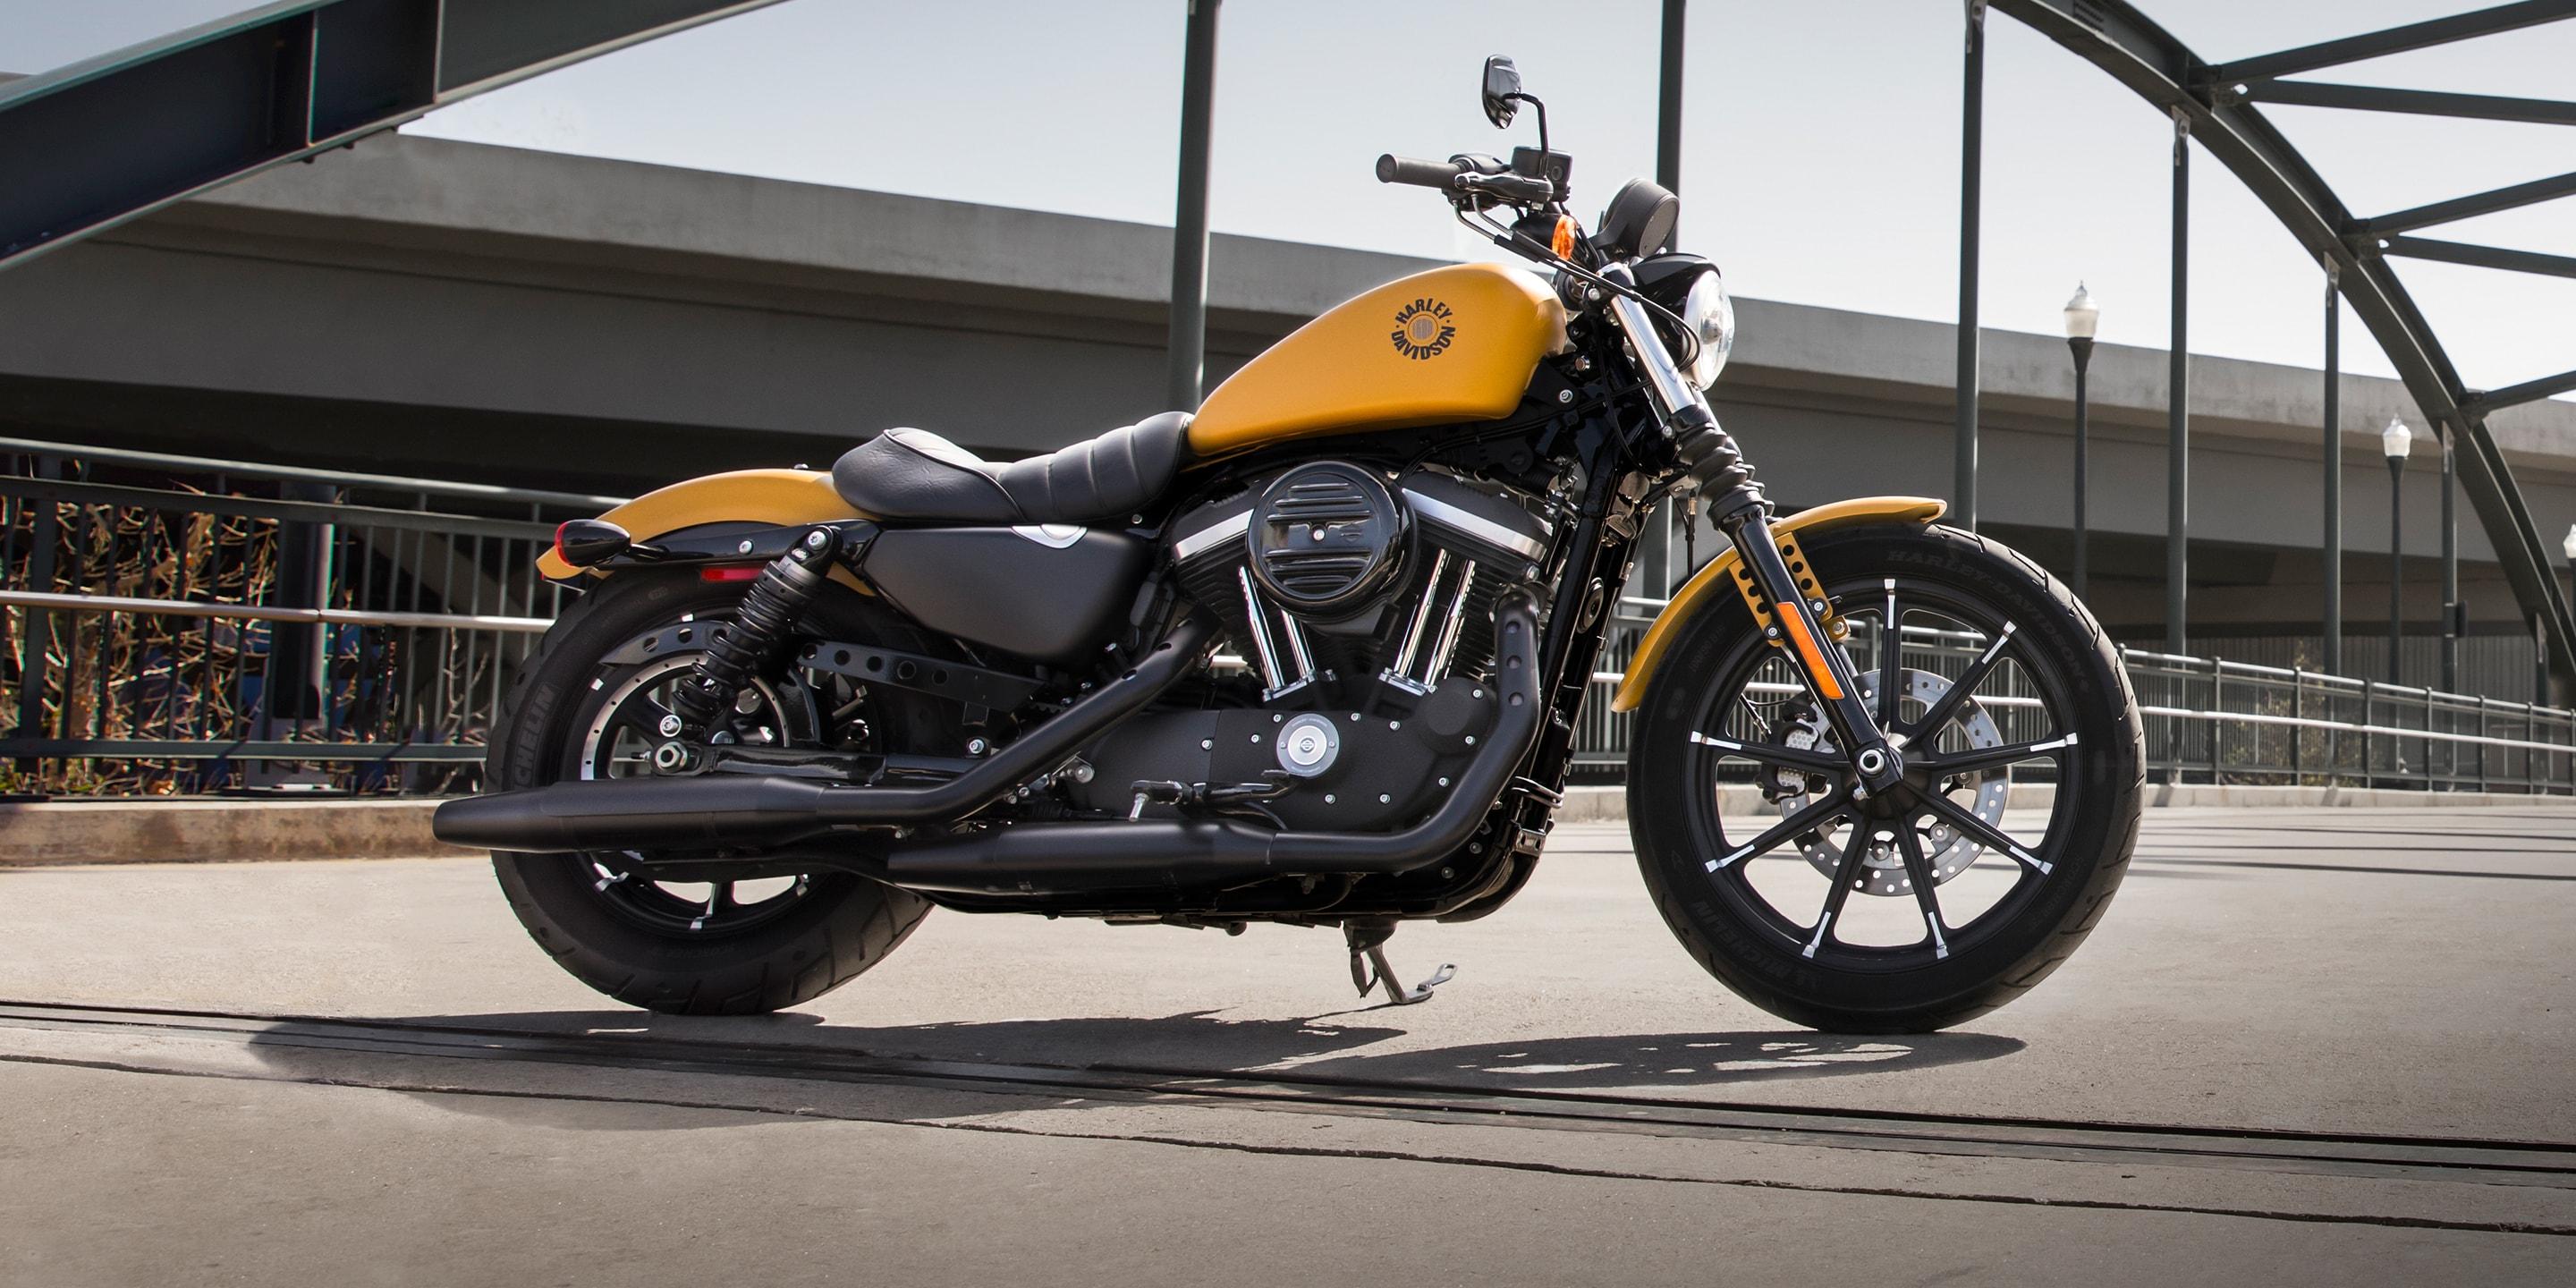 Iron 883 Motorcycle. Harley Davidson USA